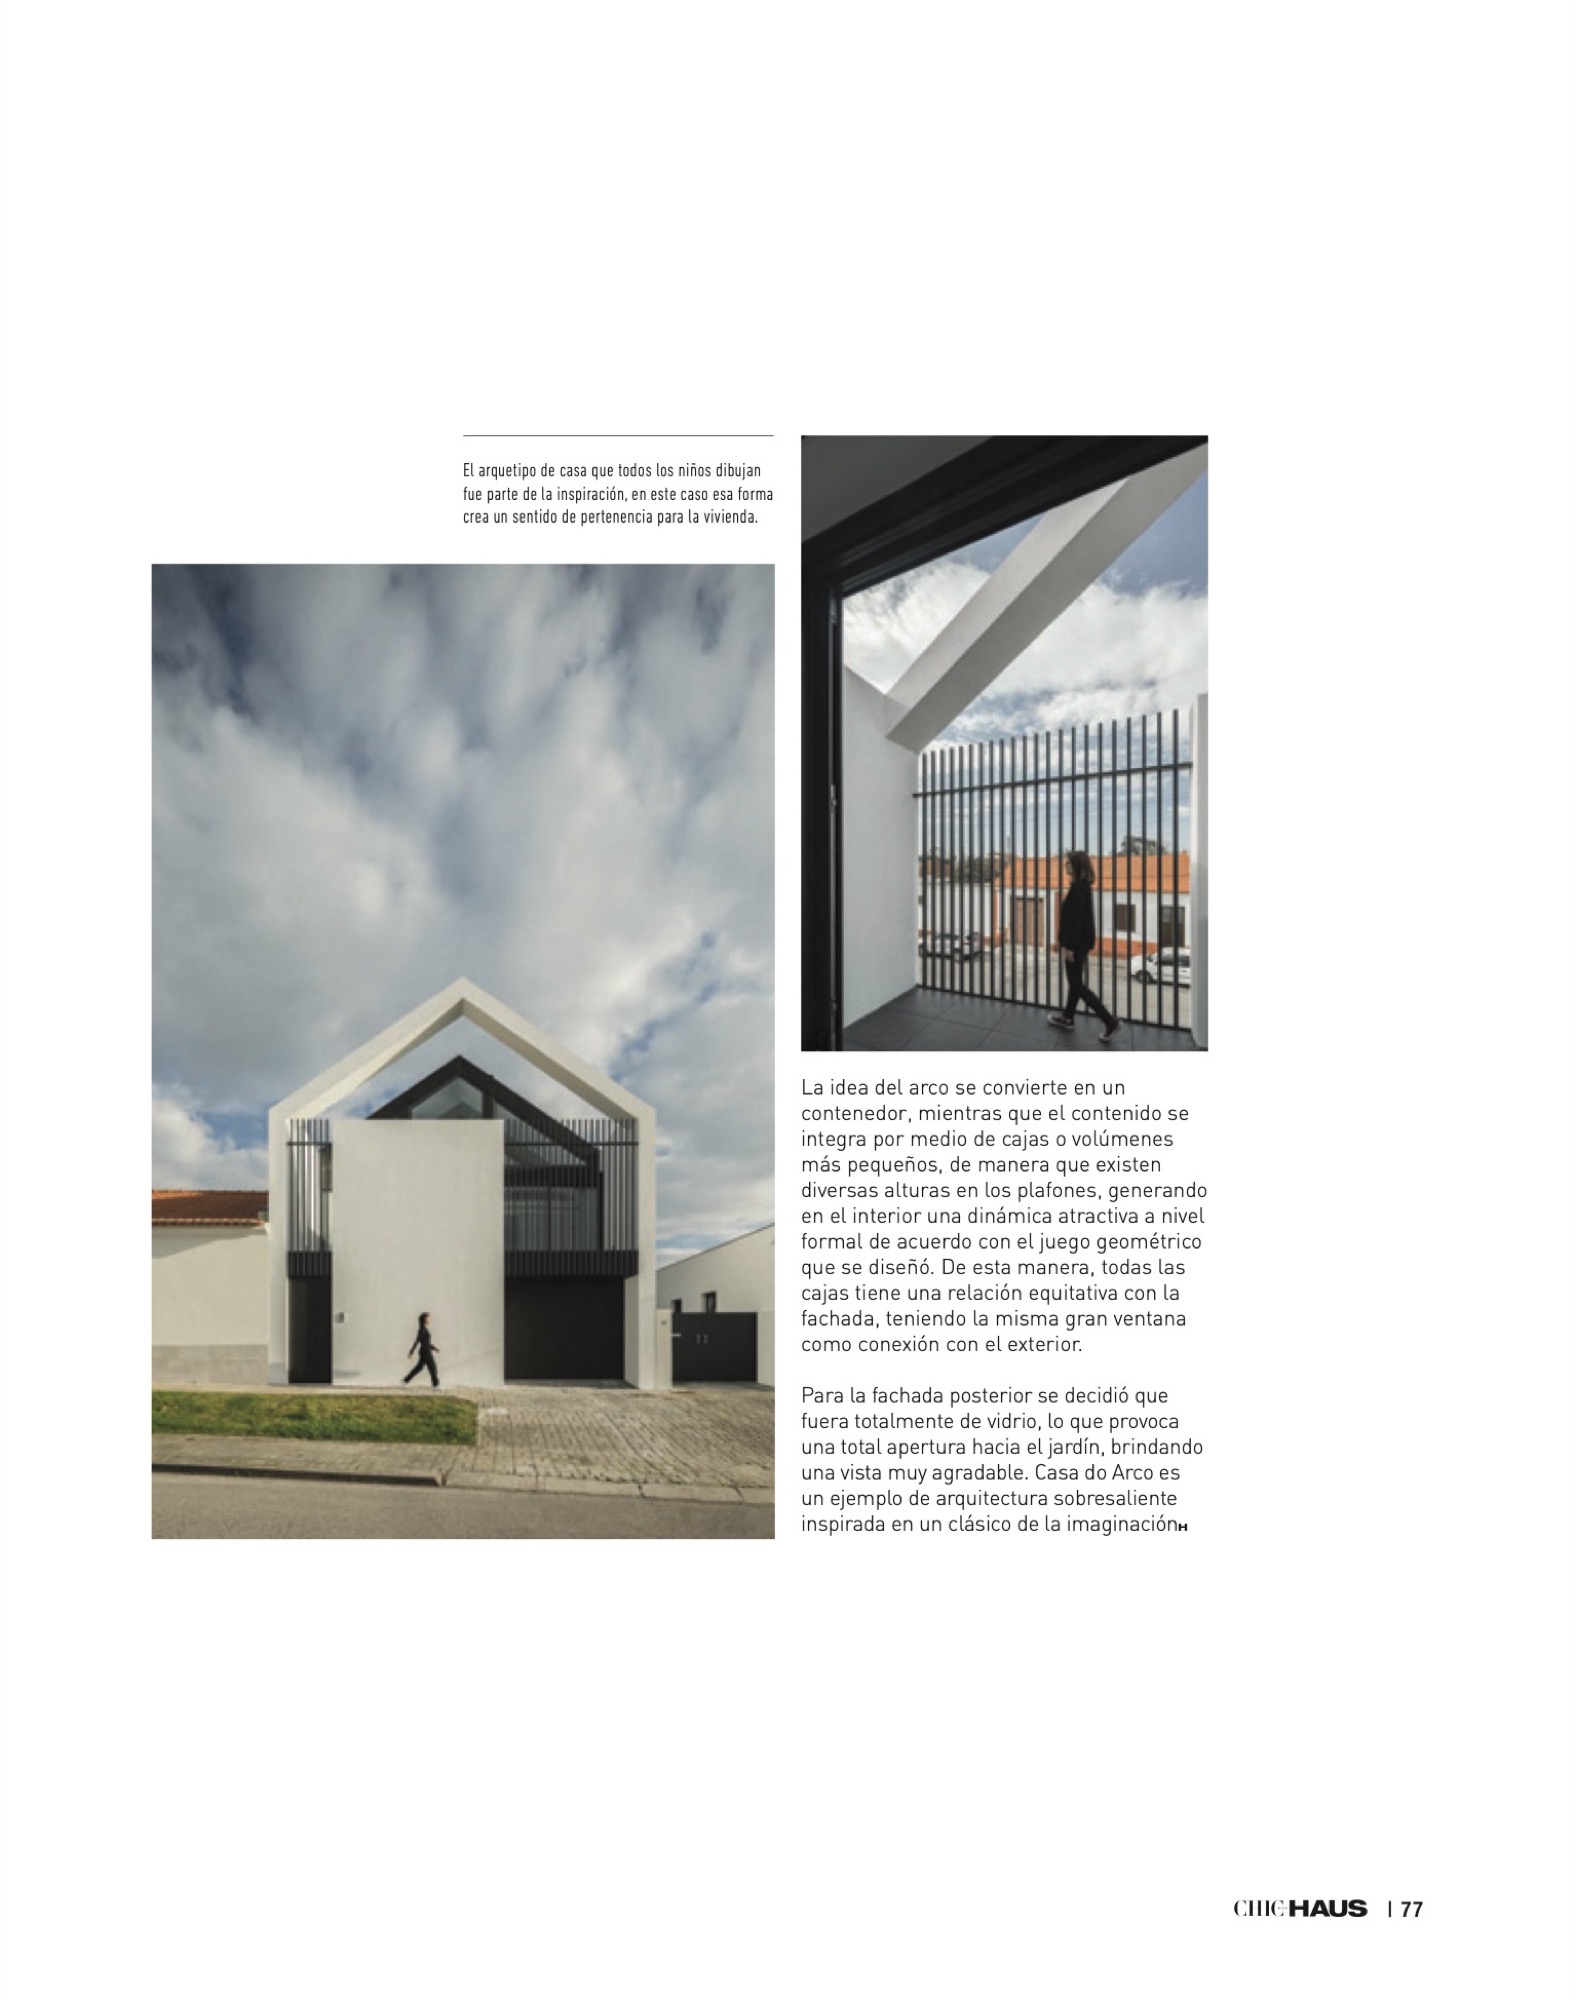 Chic Haus Magazine September Casa Arco Frari Arquitectura 233 77 do fotografo Ivo Tavares Studio